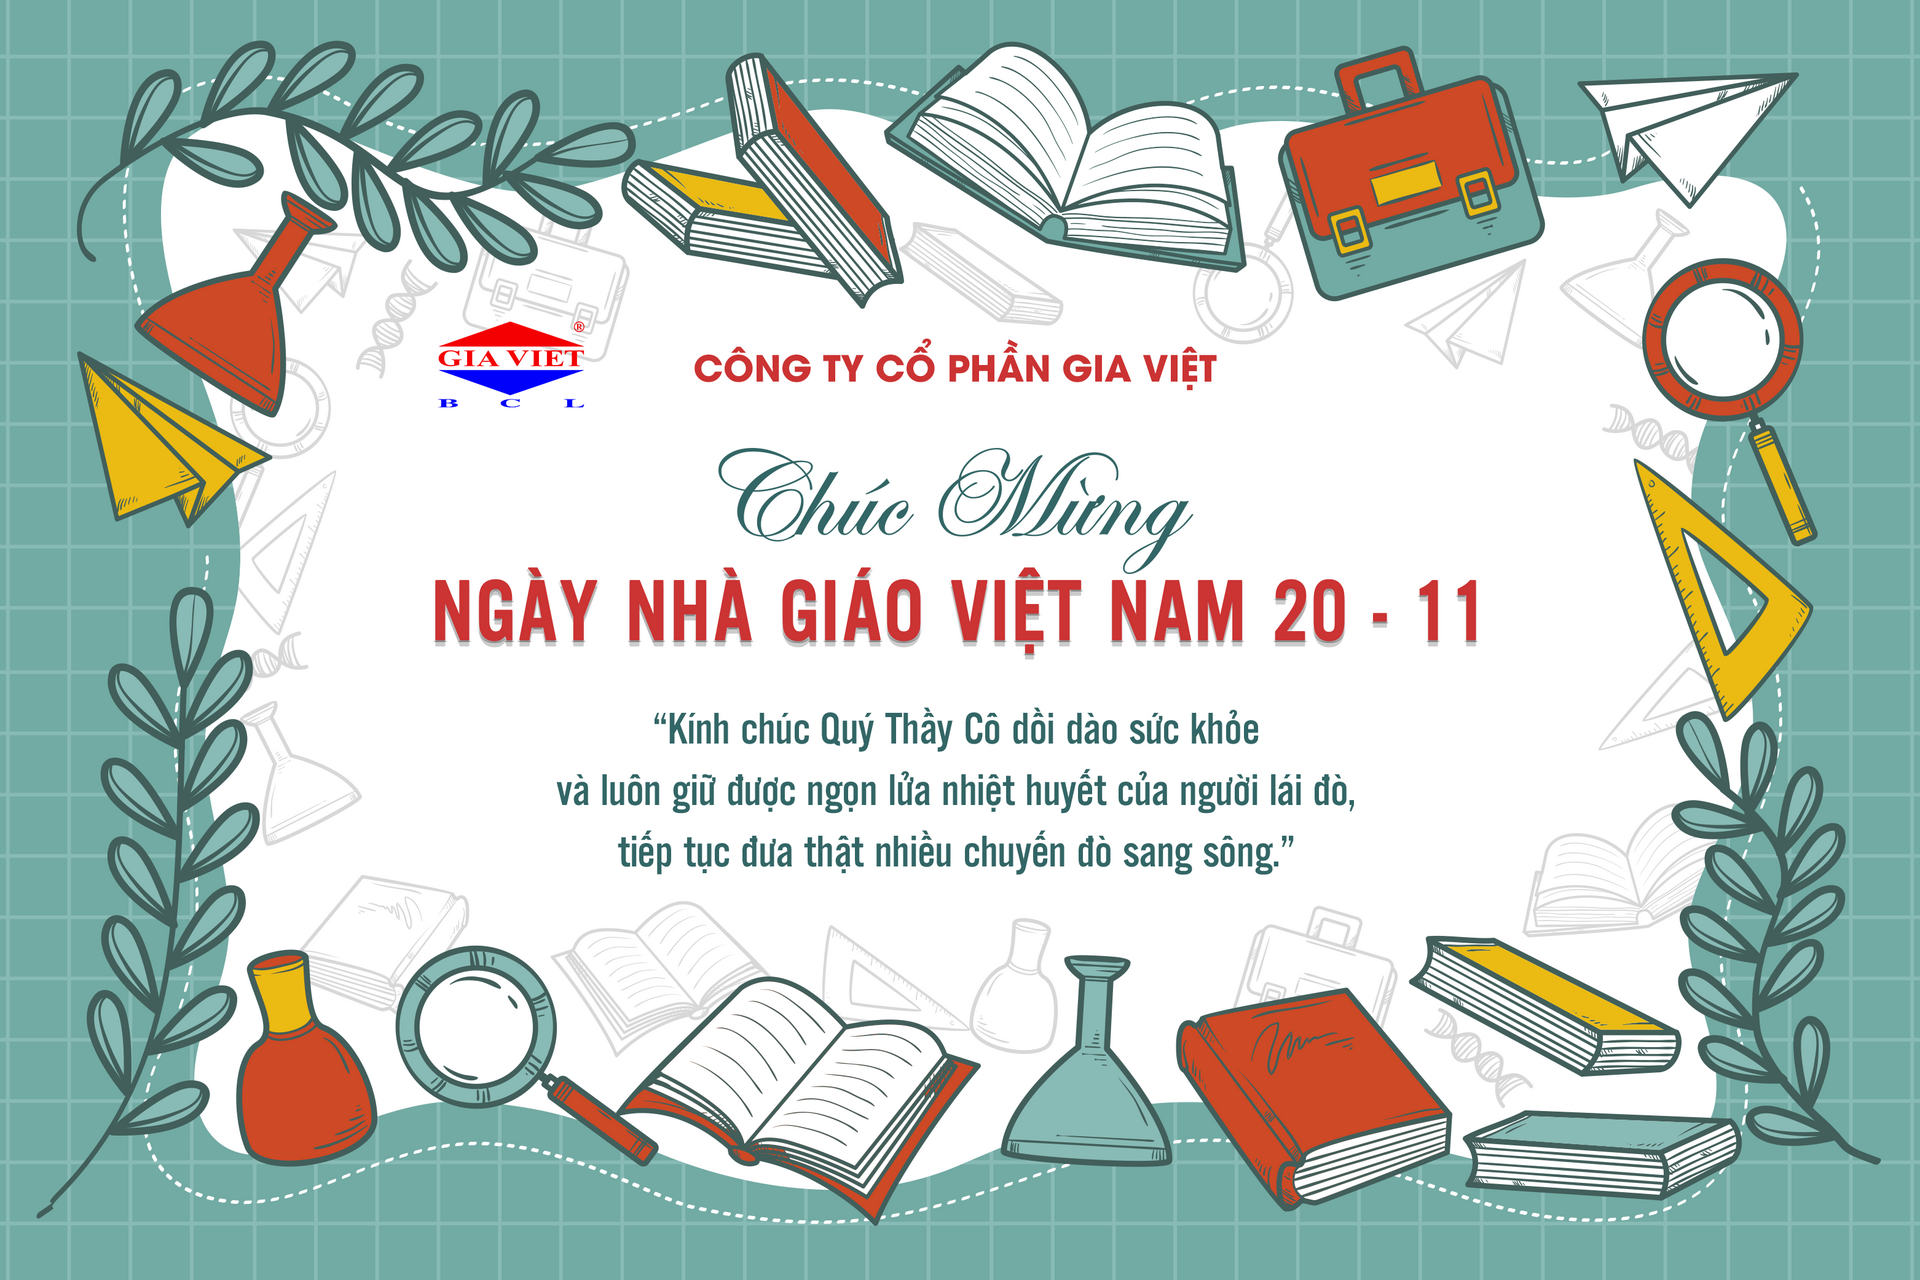 Chúc mừng Ngày Nhà giáo Việt Nam 20 tháng 11